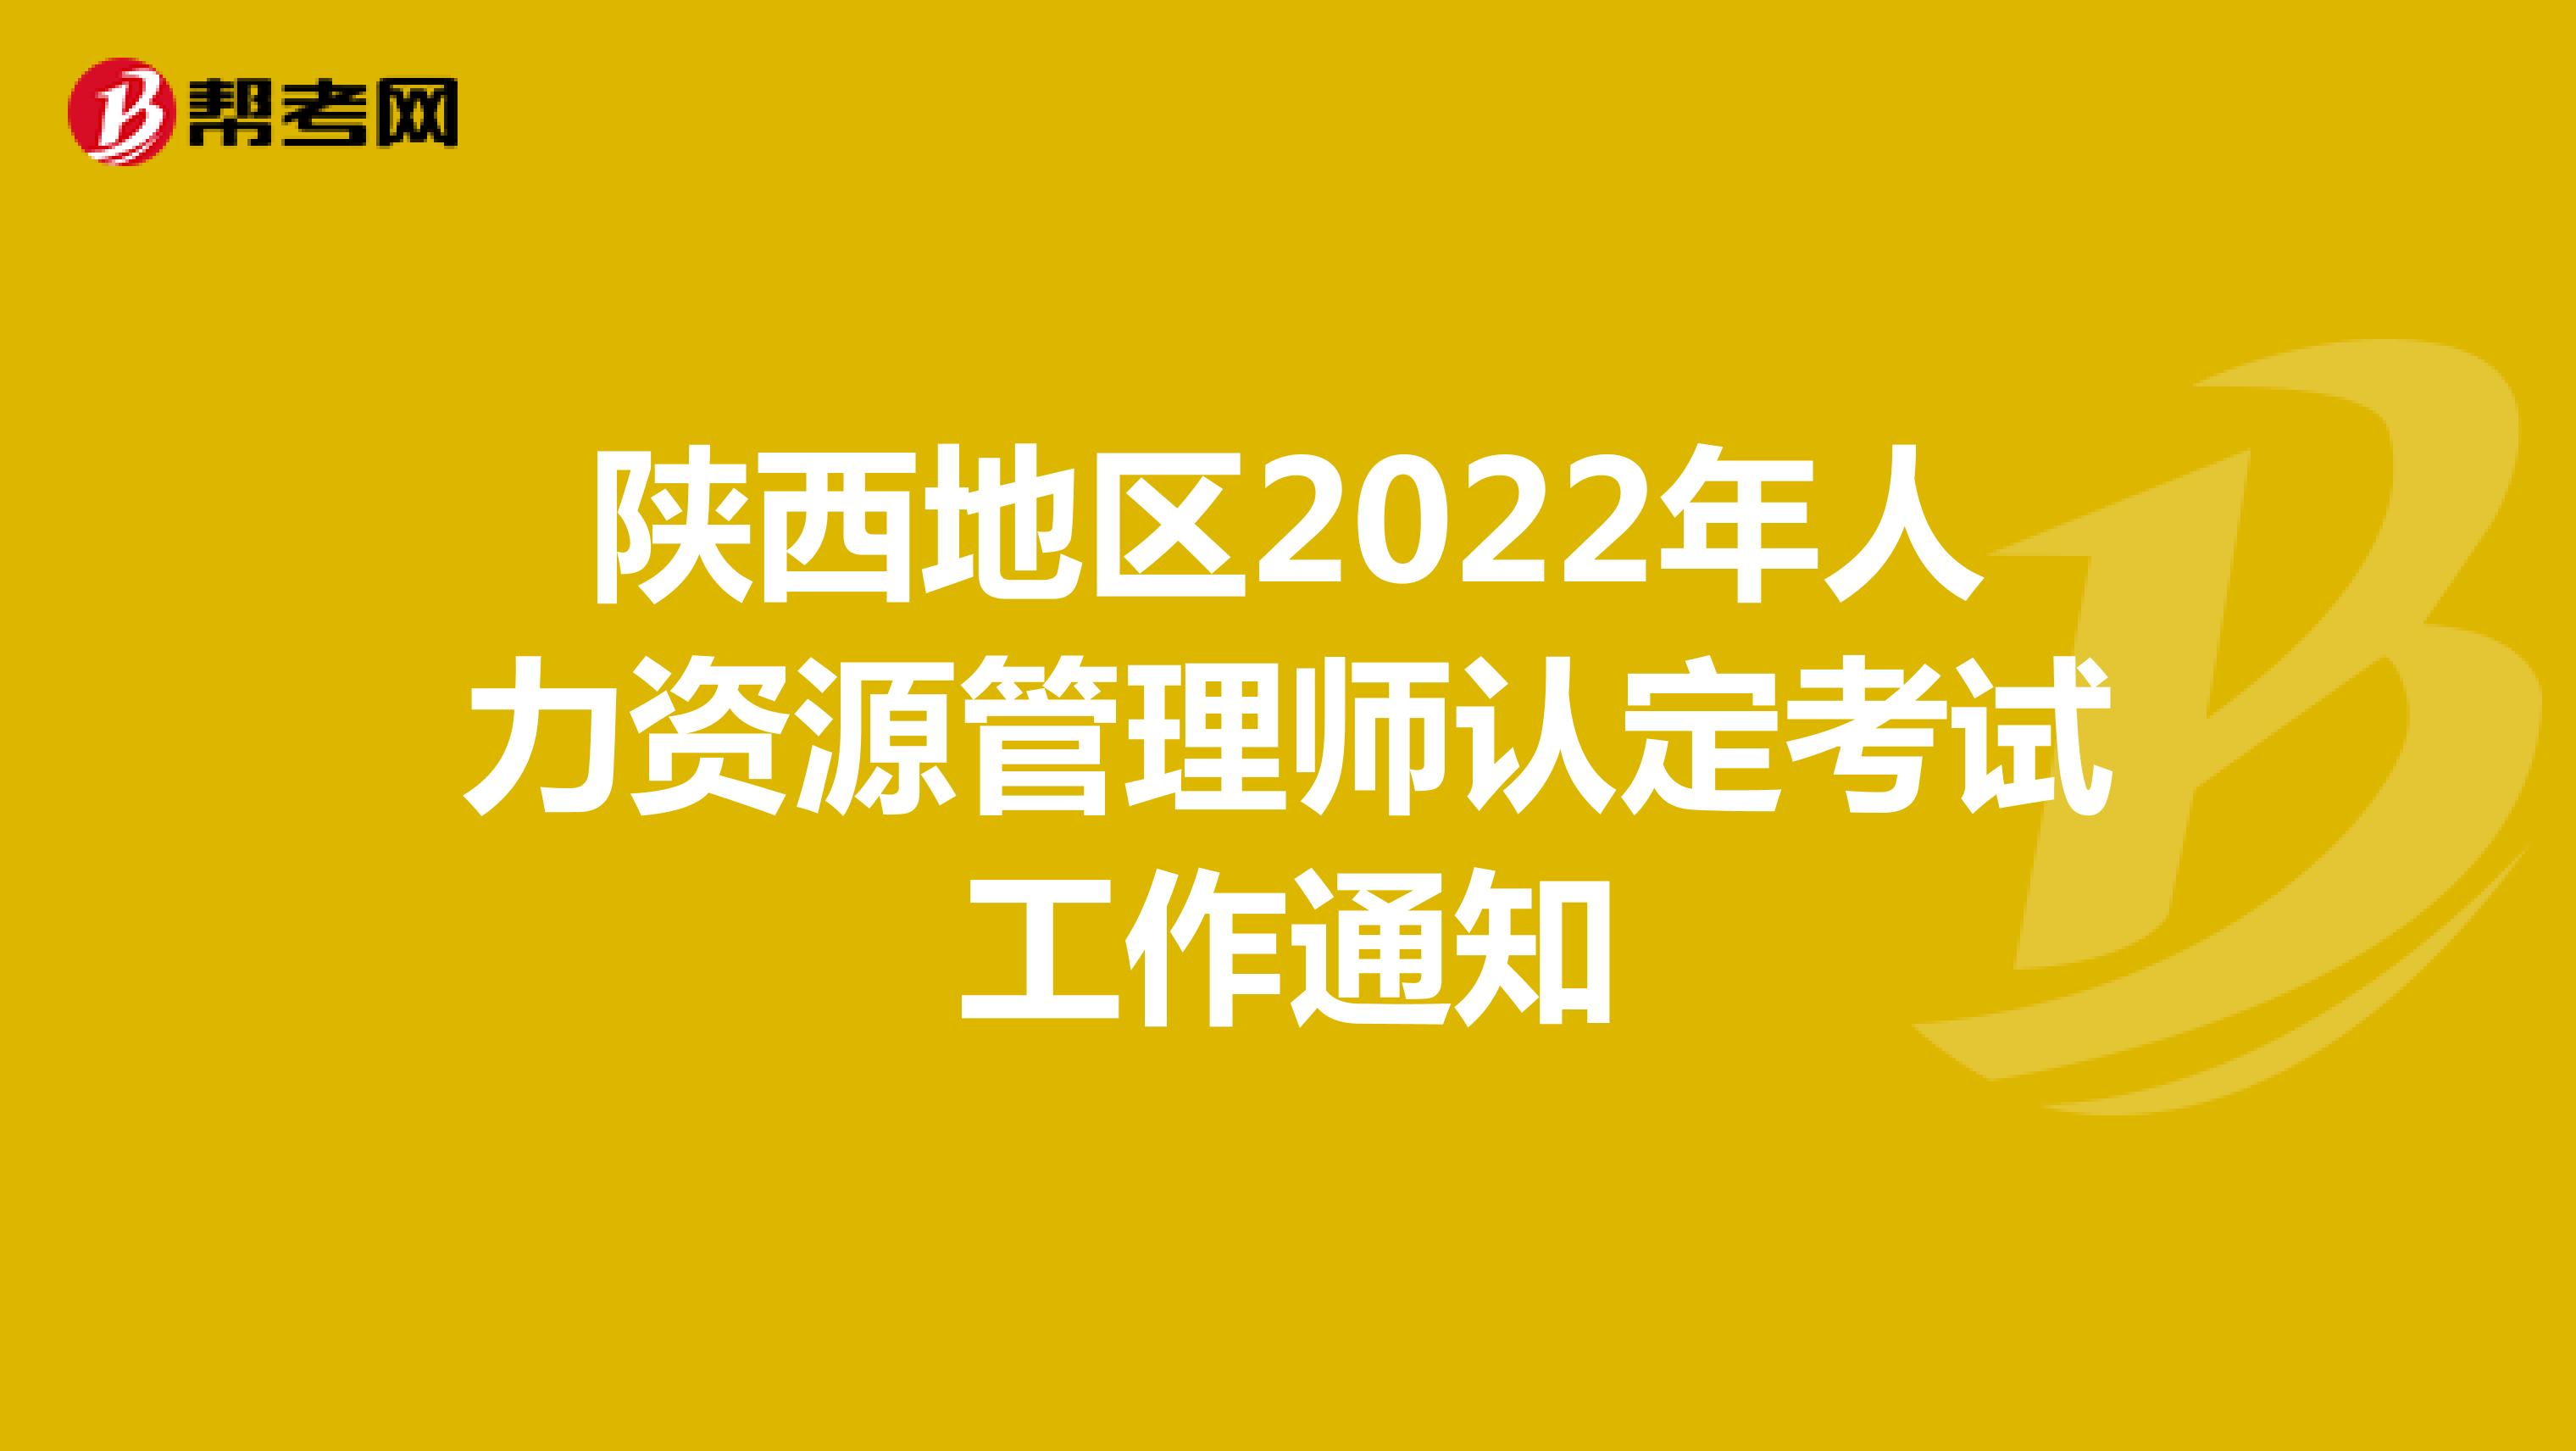 陕西地区2022年人力资源管理师认定考试工作通知